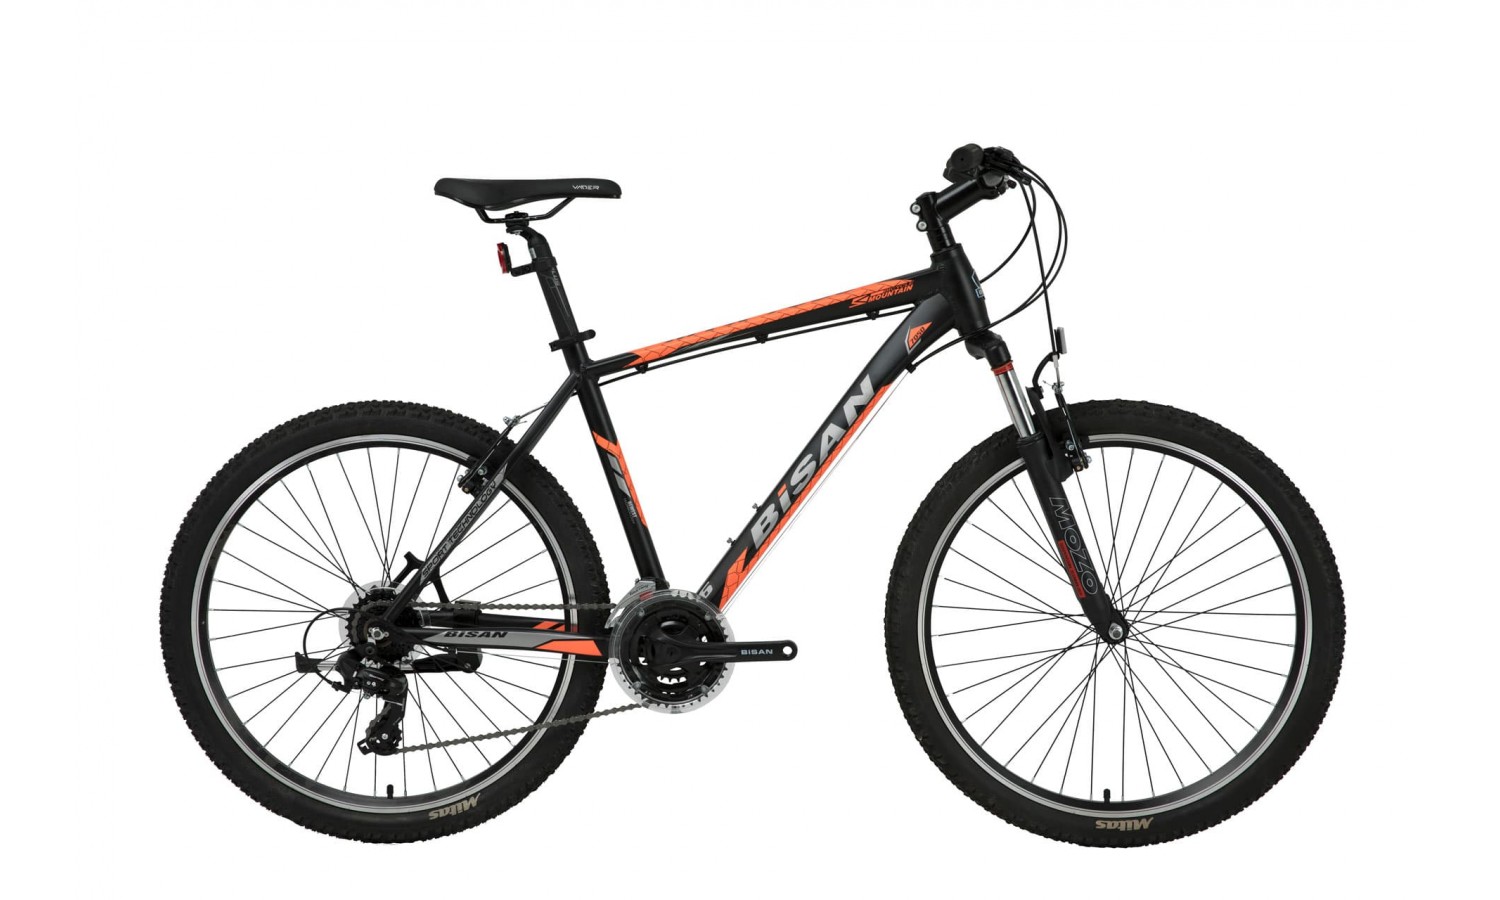 Bisan Mtx 7050 29 V Dağ Bisikleti (Siyah-Turuncu)